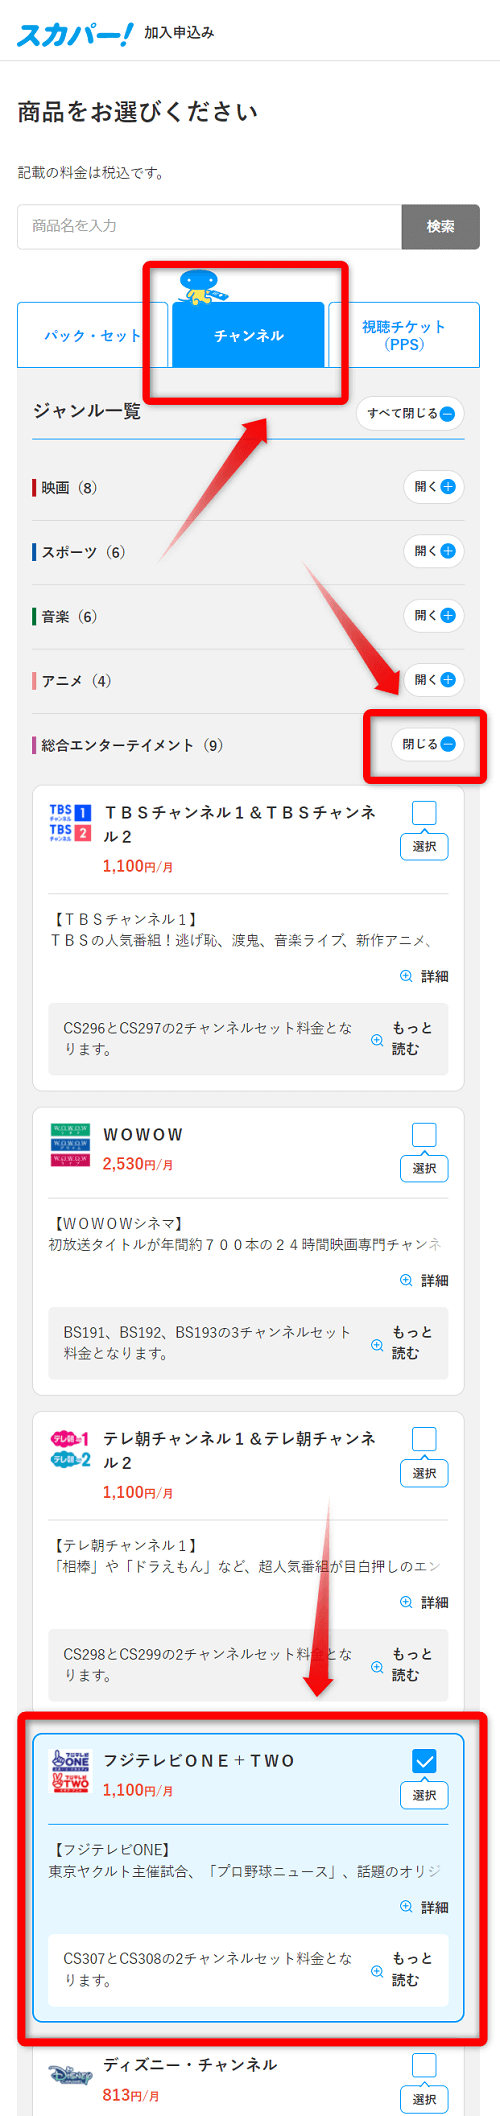 フジテレビTWOのスカパー放送視聴手順3